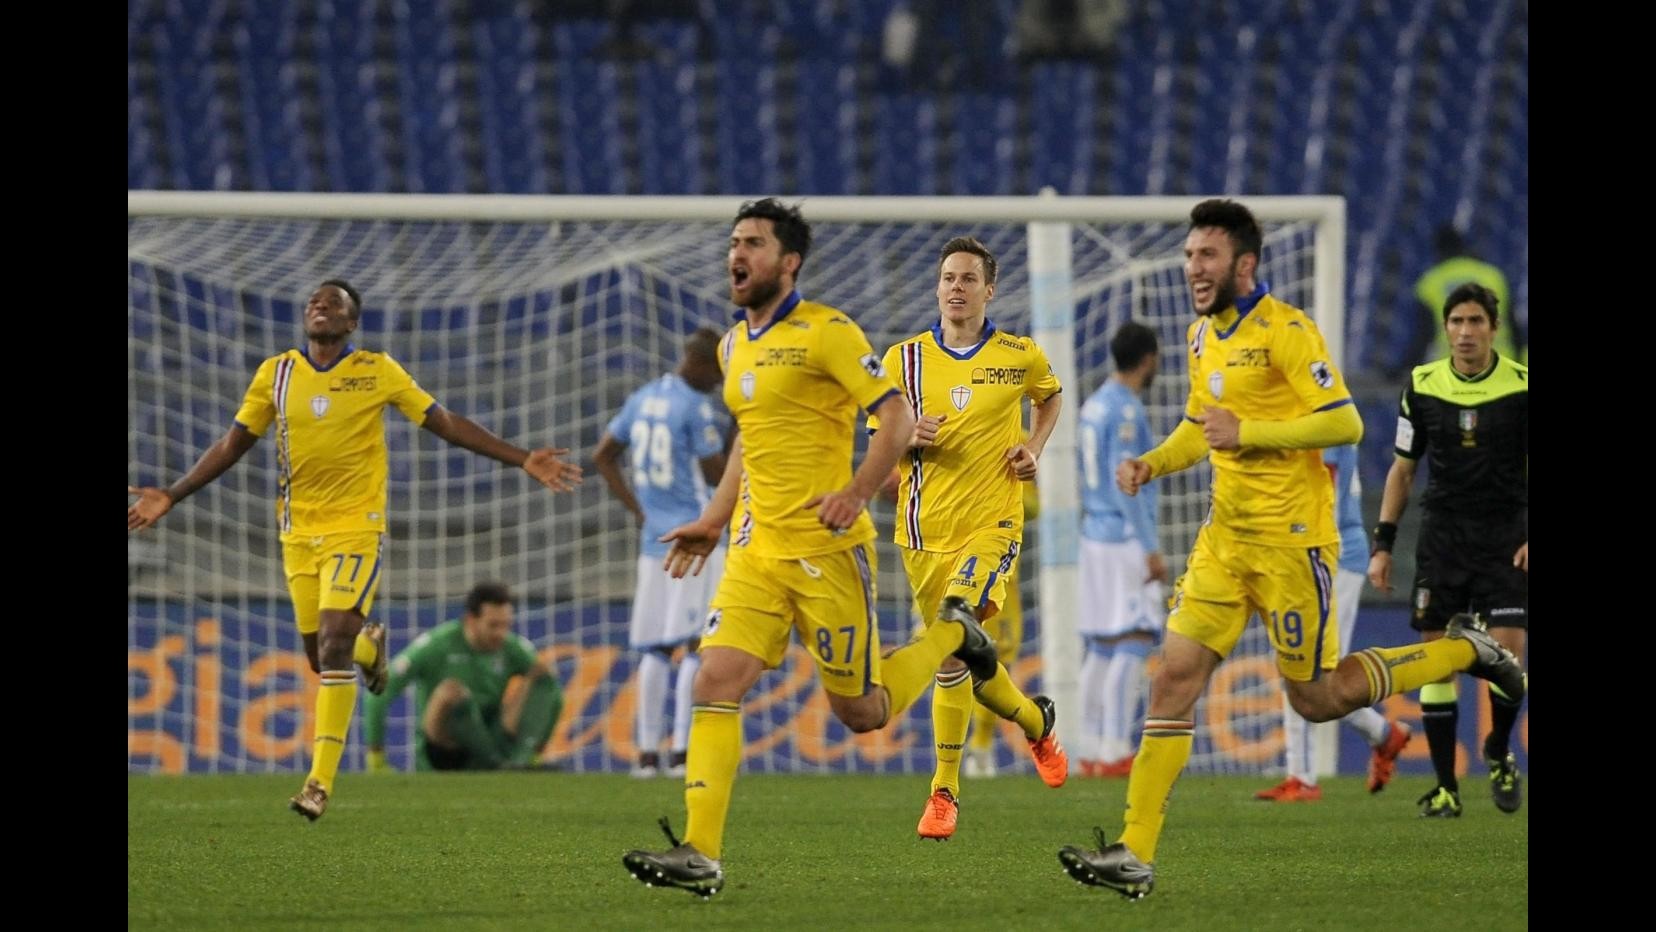 Serie A, Zukanovic replica a Matri nel recupero: Lazio-Sampdoria 1-1